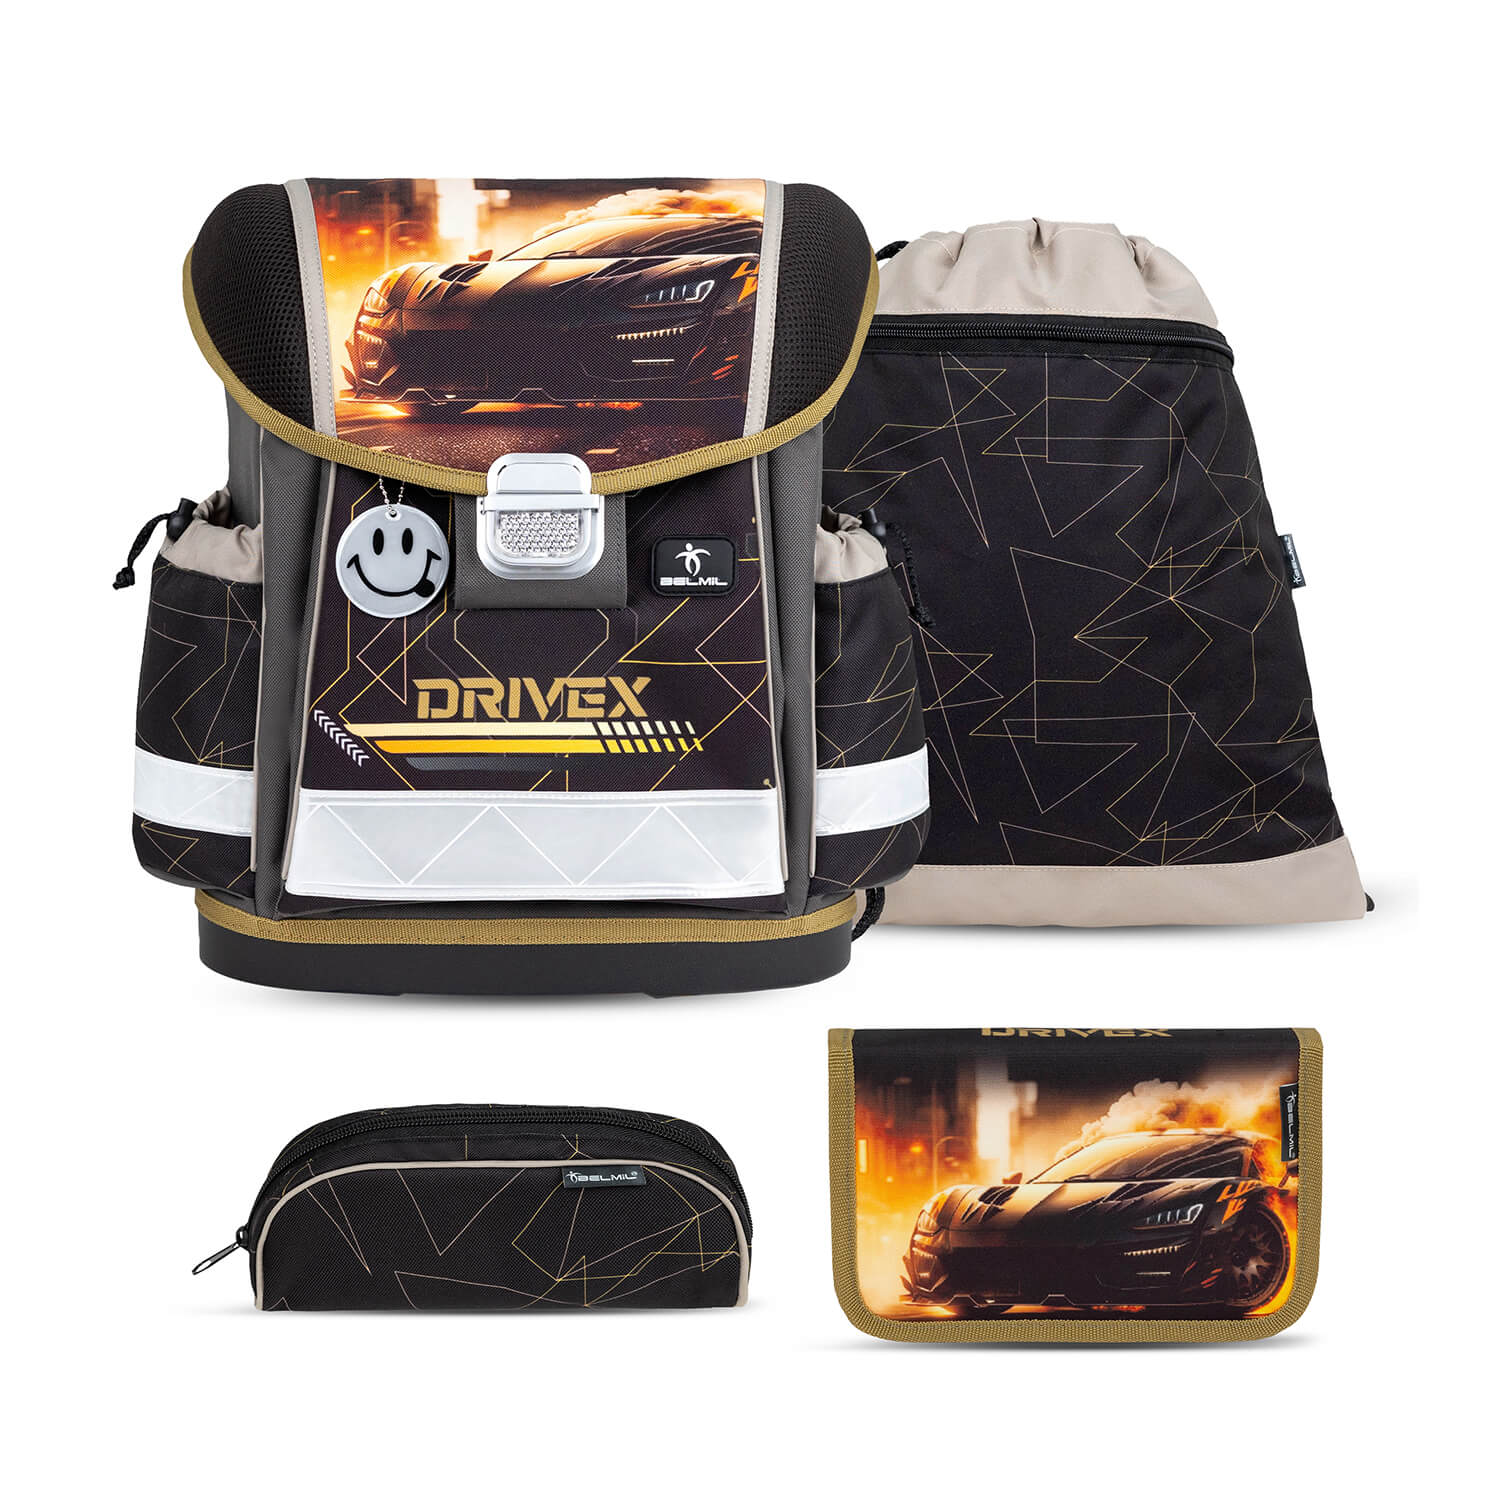 Classy Drivex schoolbag set 4 pcs